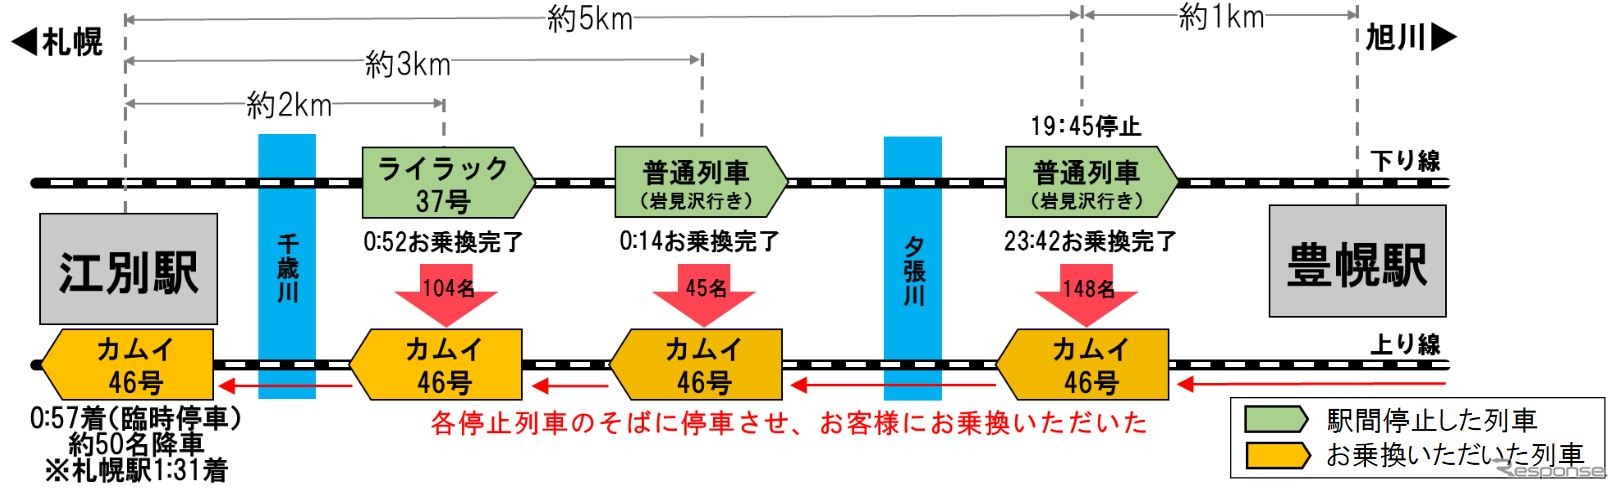 1月25日、函館本線江別～豊幌間で下り列車3本が駅間で立ち往生。江別、札幌方面へ引き返すために上り特急『カムイ46号』を列車のそばに停車させ、乗換え用のはしごで下り列車の乗客を救出する作業が日を跨いで行なわれた。